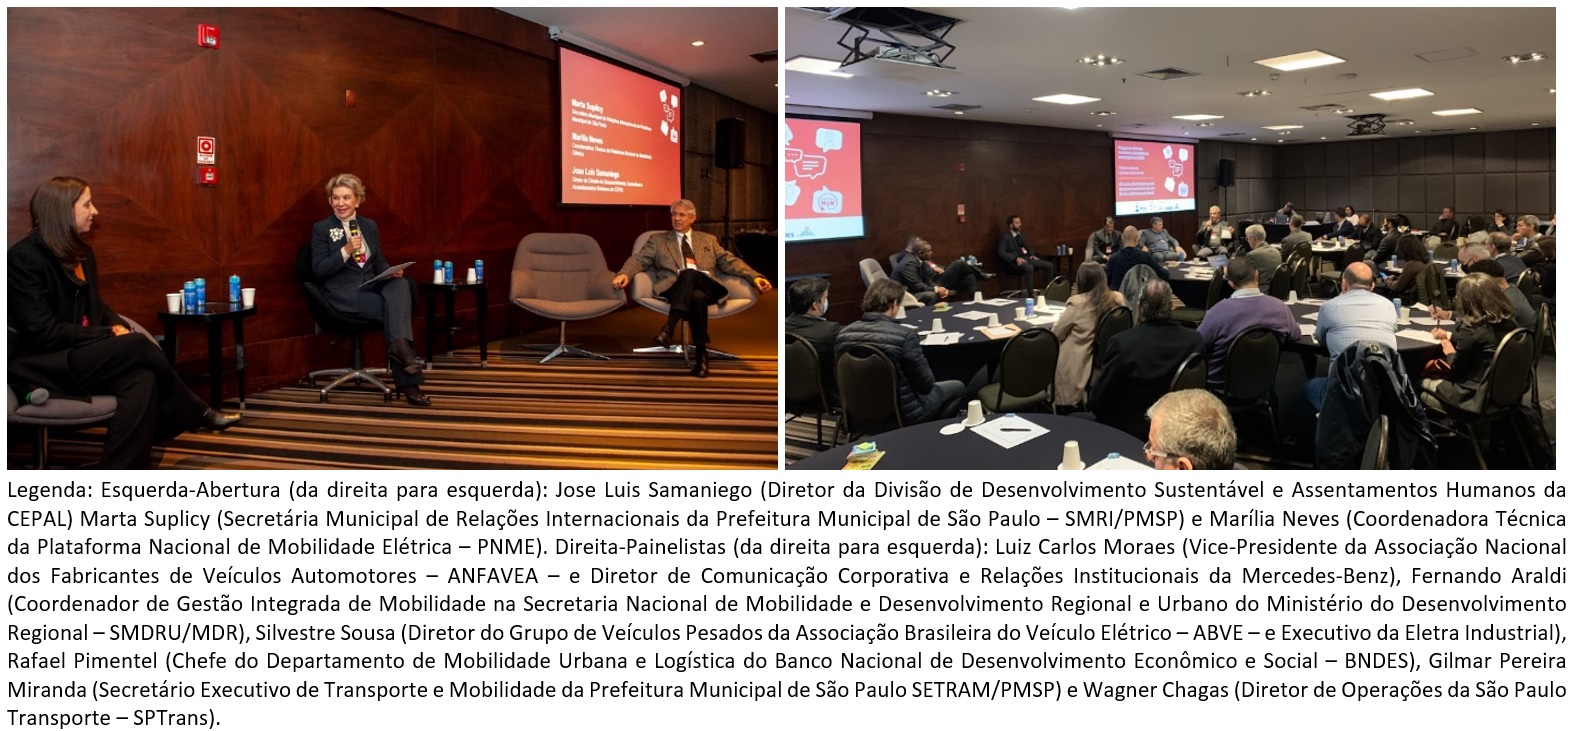 Autoridades e lideranças apontam caminhos para acelerar investimentos em ônibus elétricos no Brasil